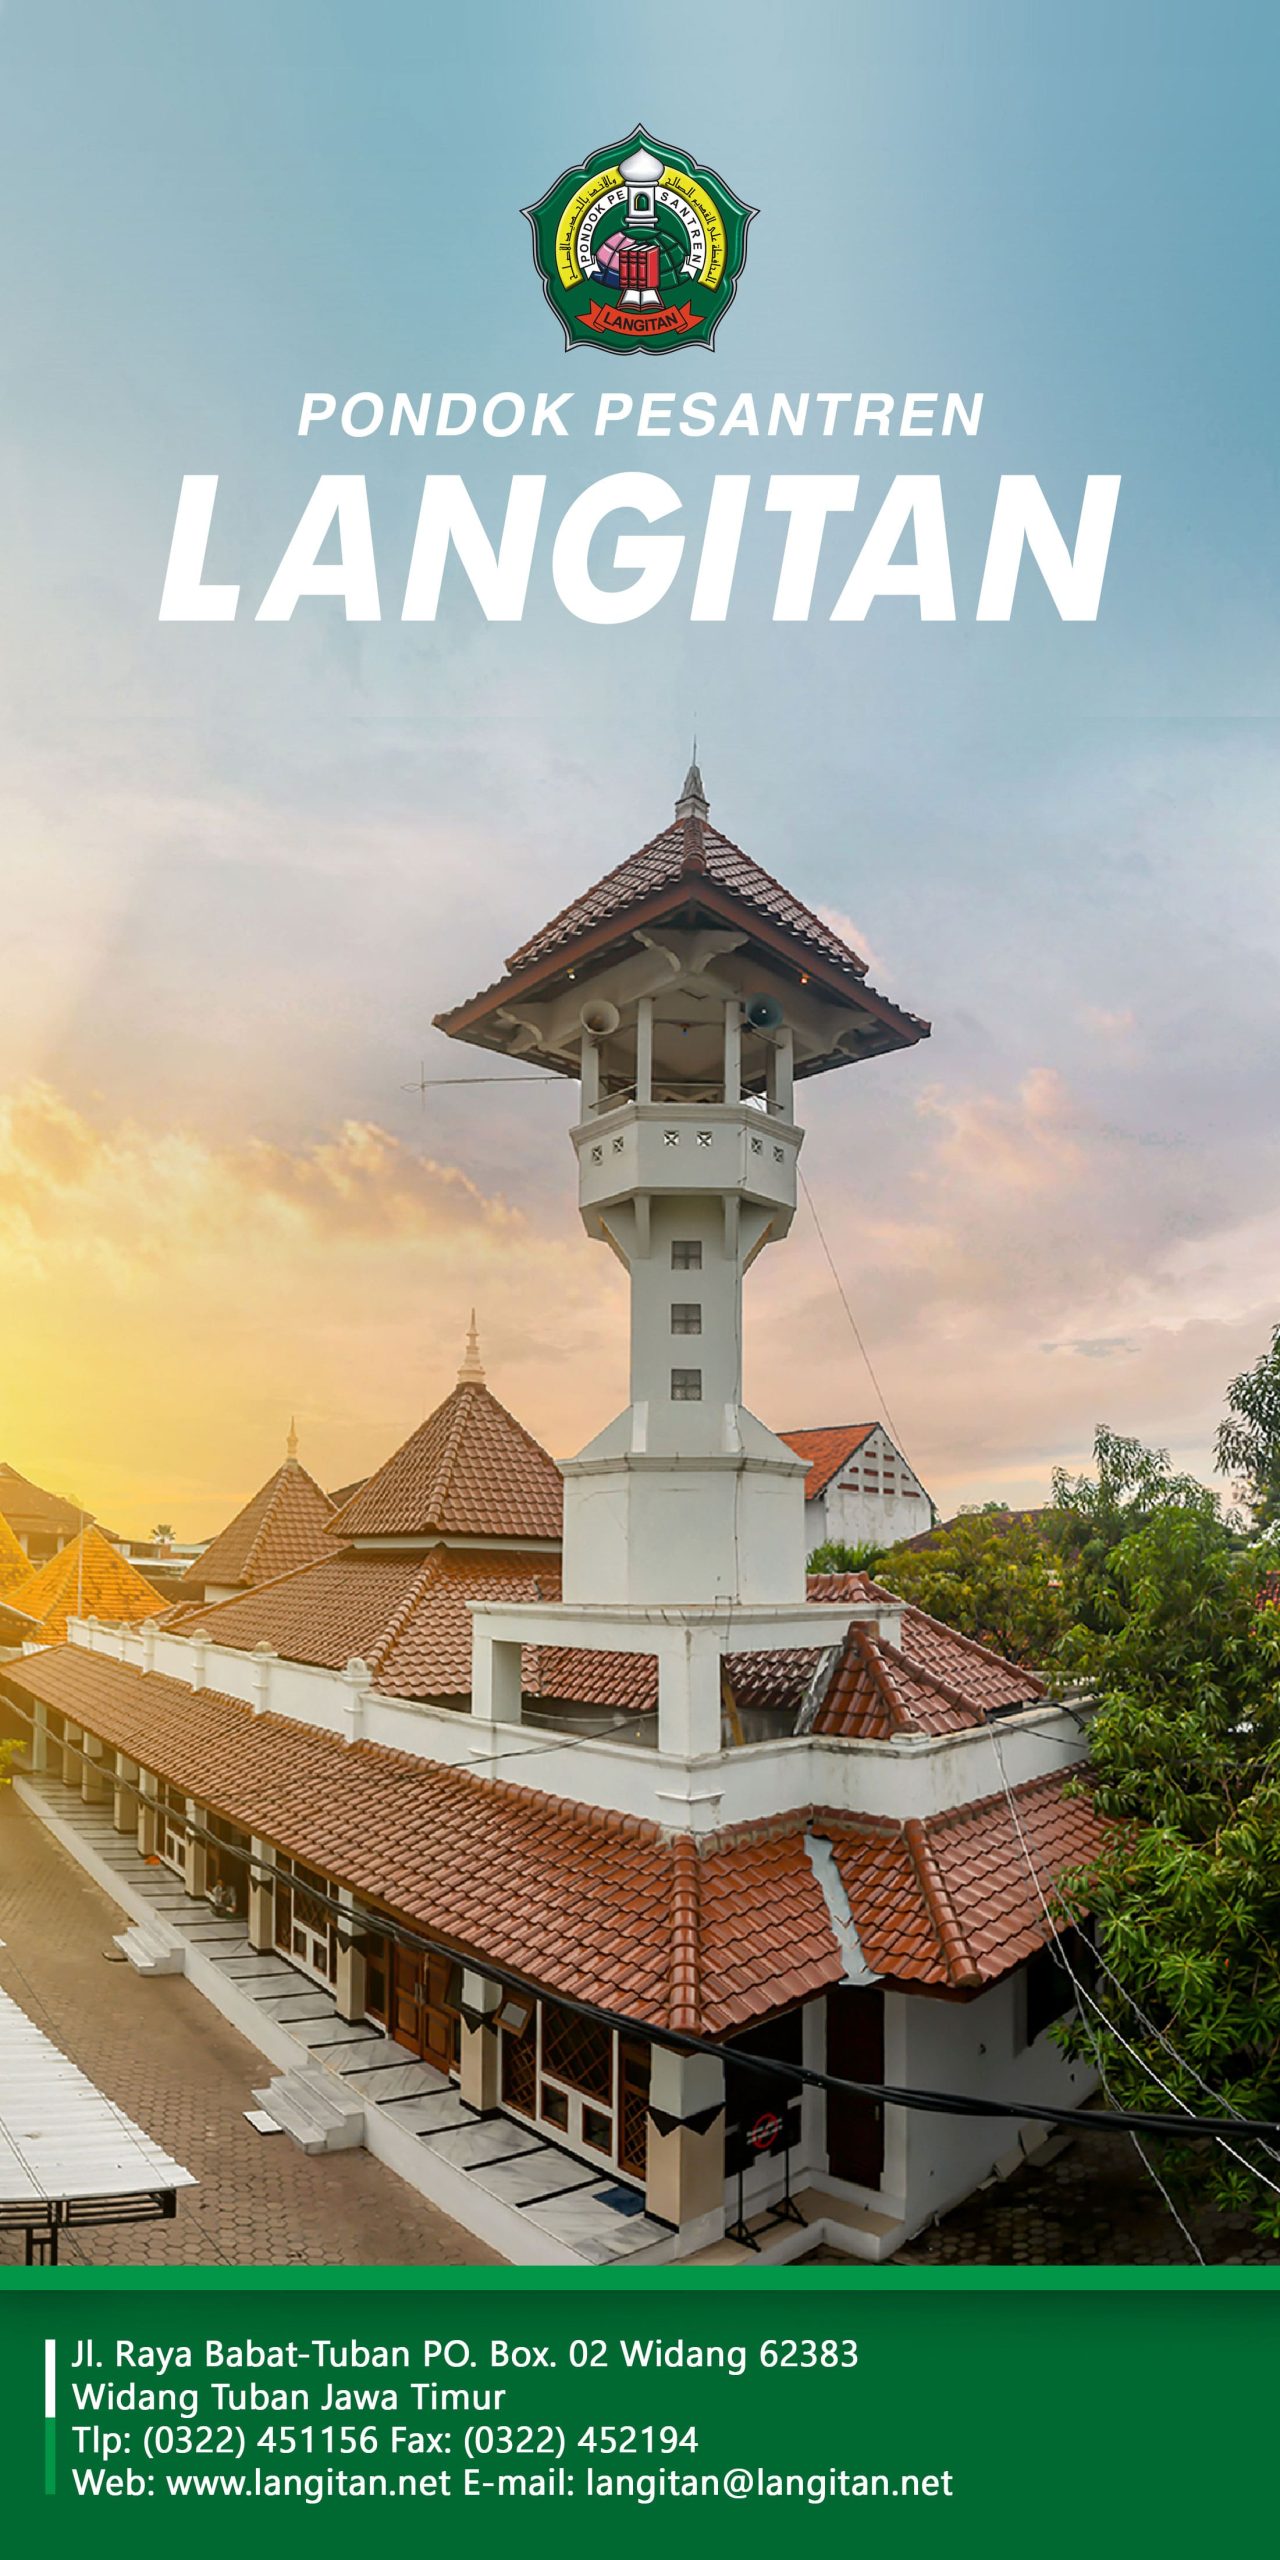 5 Pondok Pesantren Murah di Jawa Timur dengan Pendidikan Terbaik, Buruan Daftar